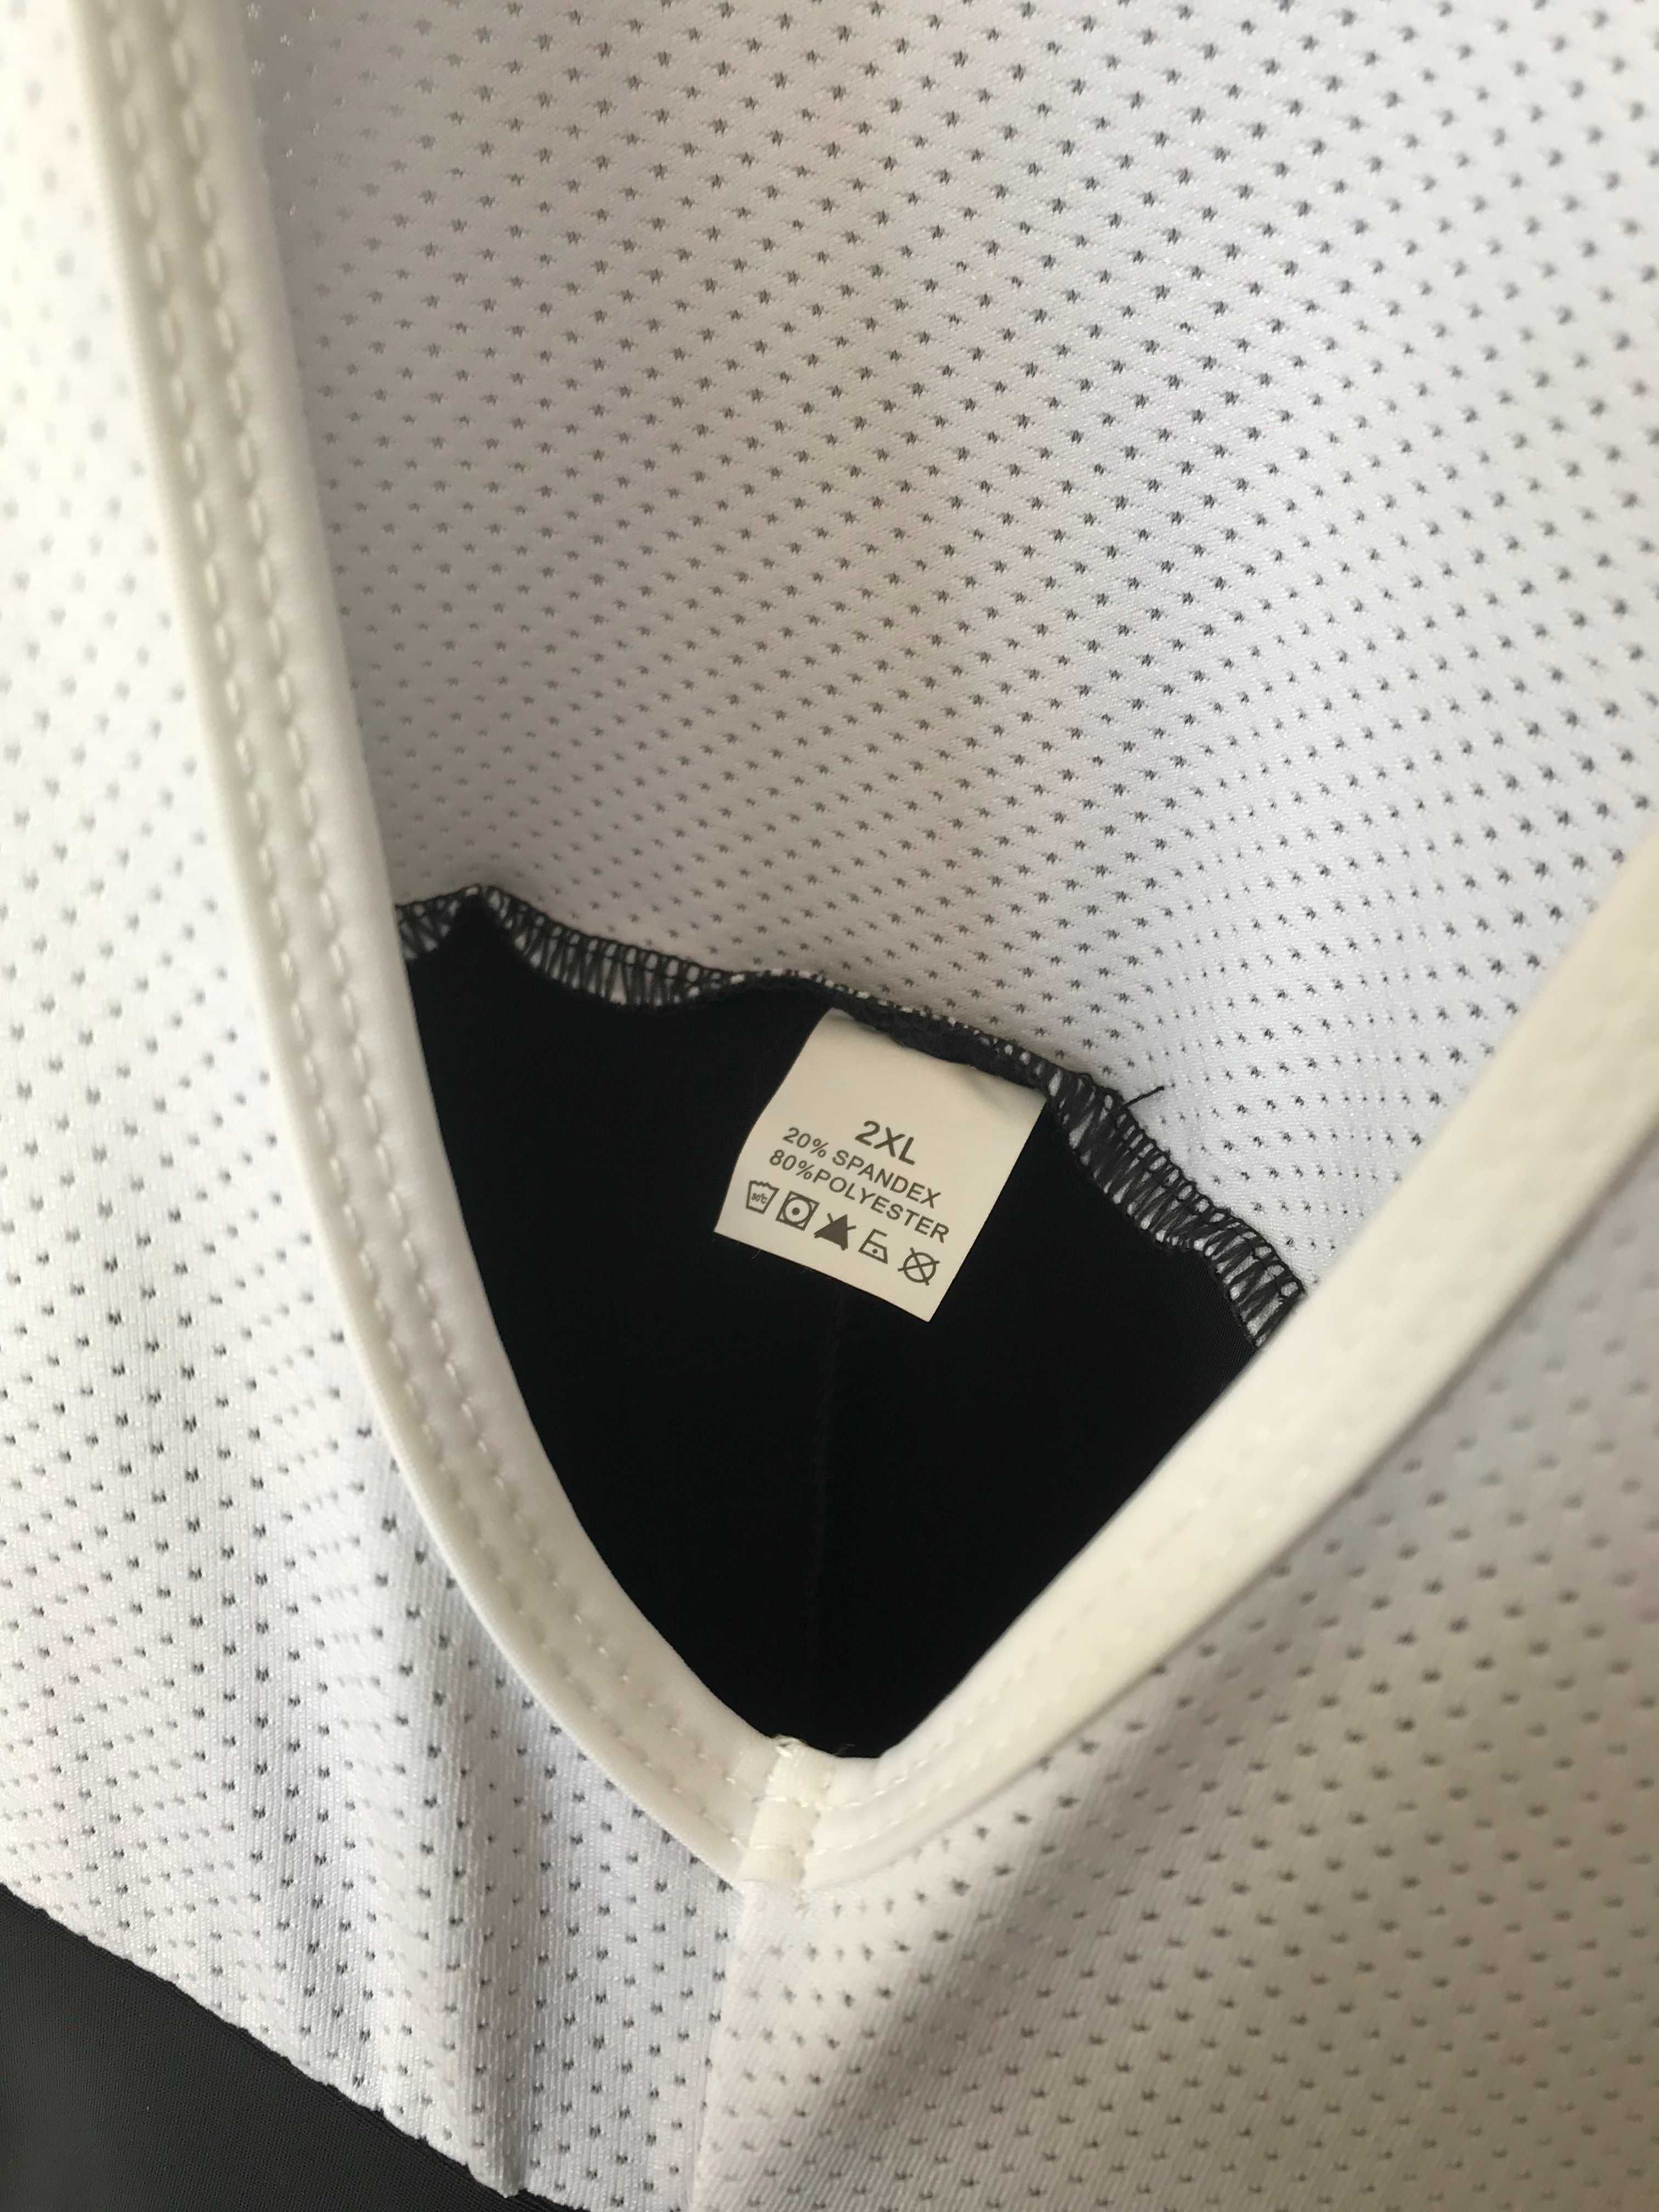 Komplet: Spodnie kolarskie długie z szelkami + bluza z logo TREK r.XXL